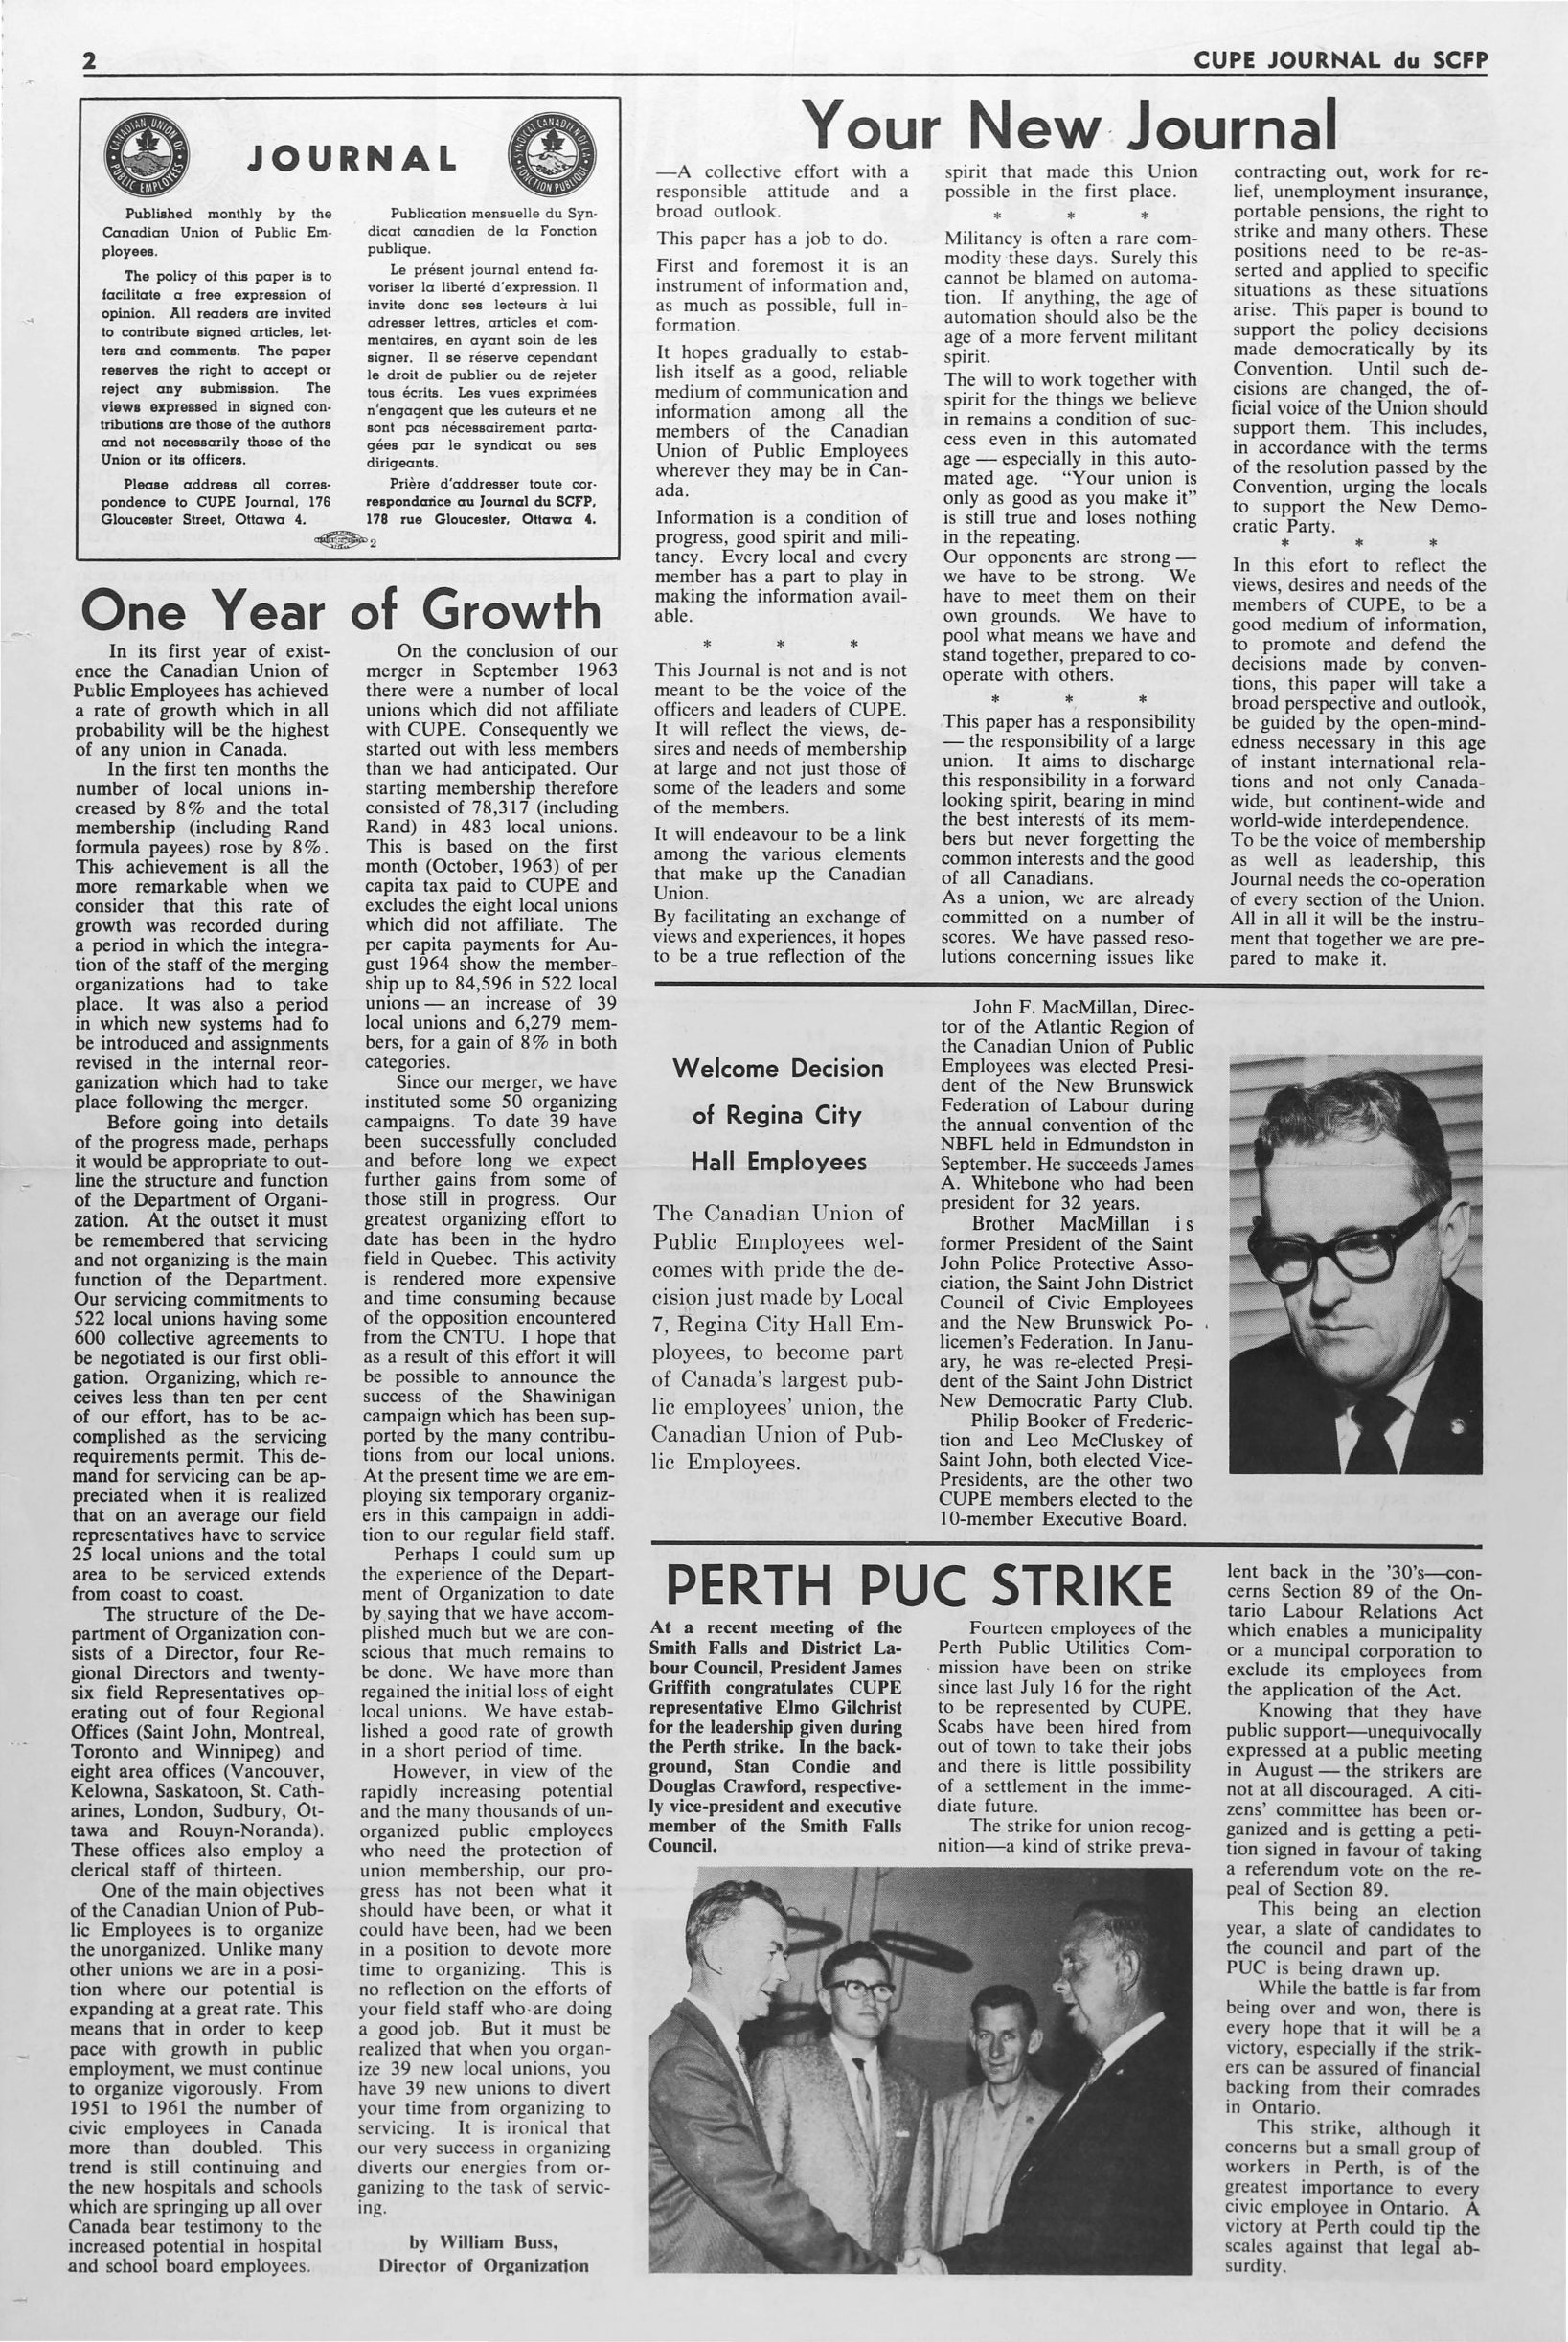 Journal October 1964 p.2